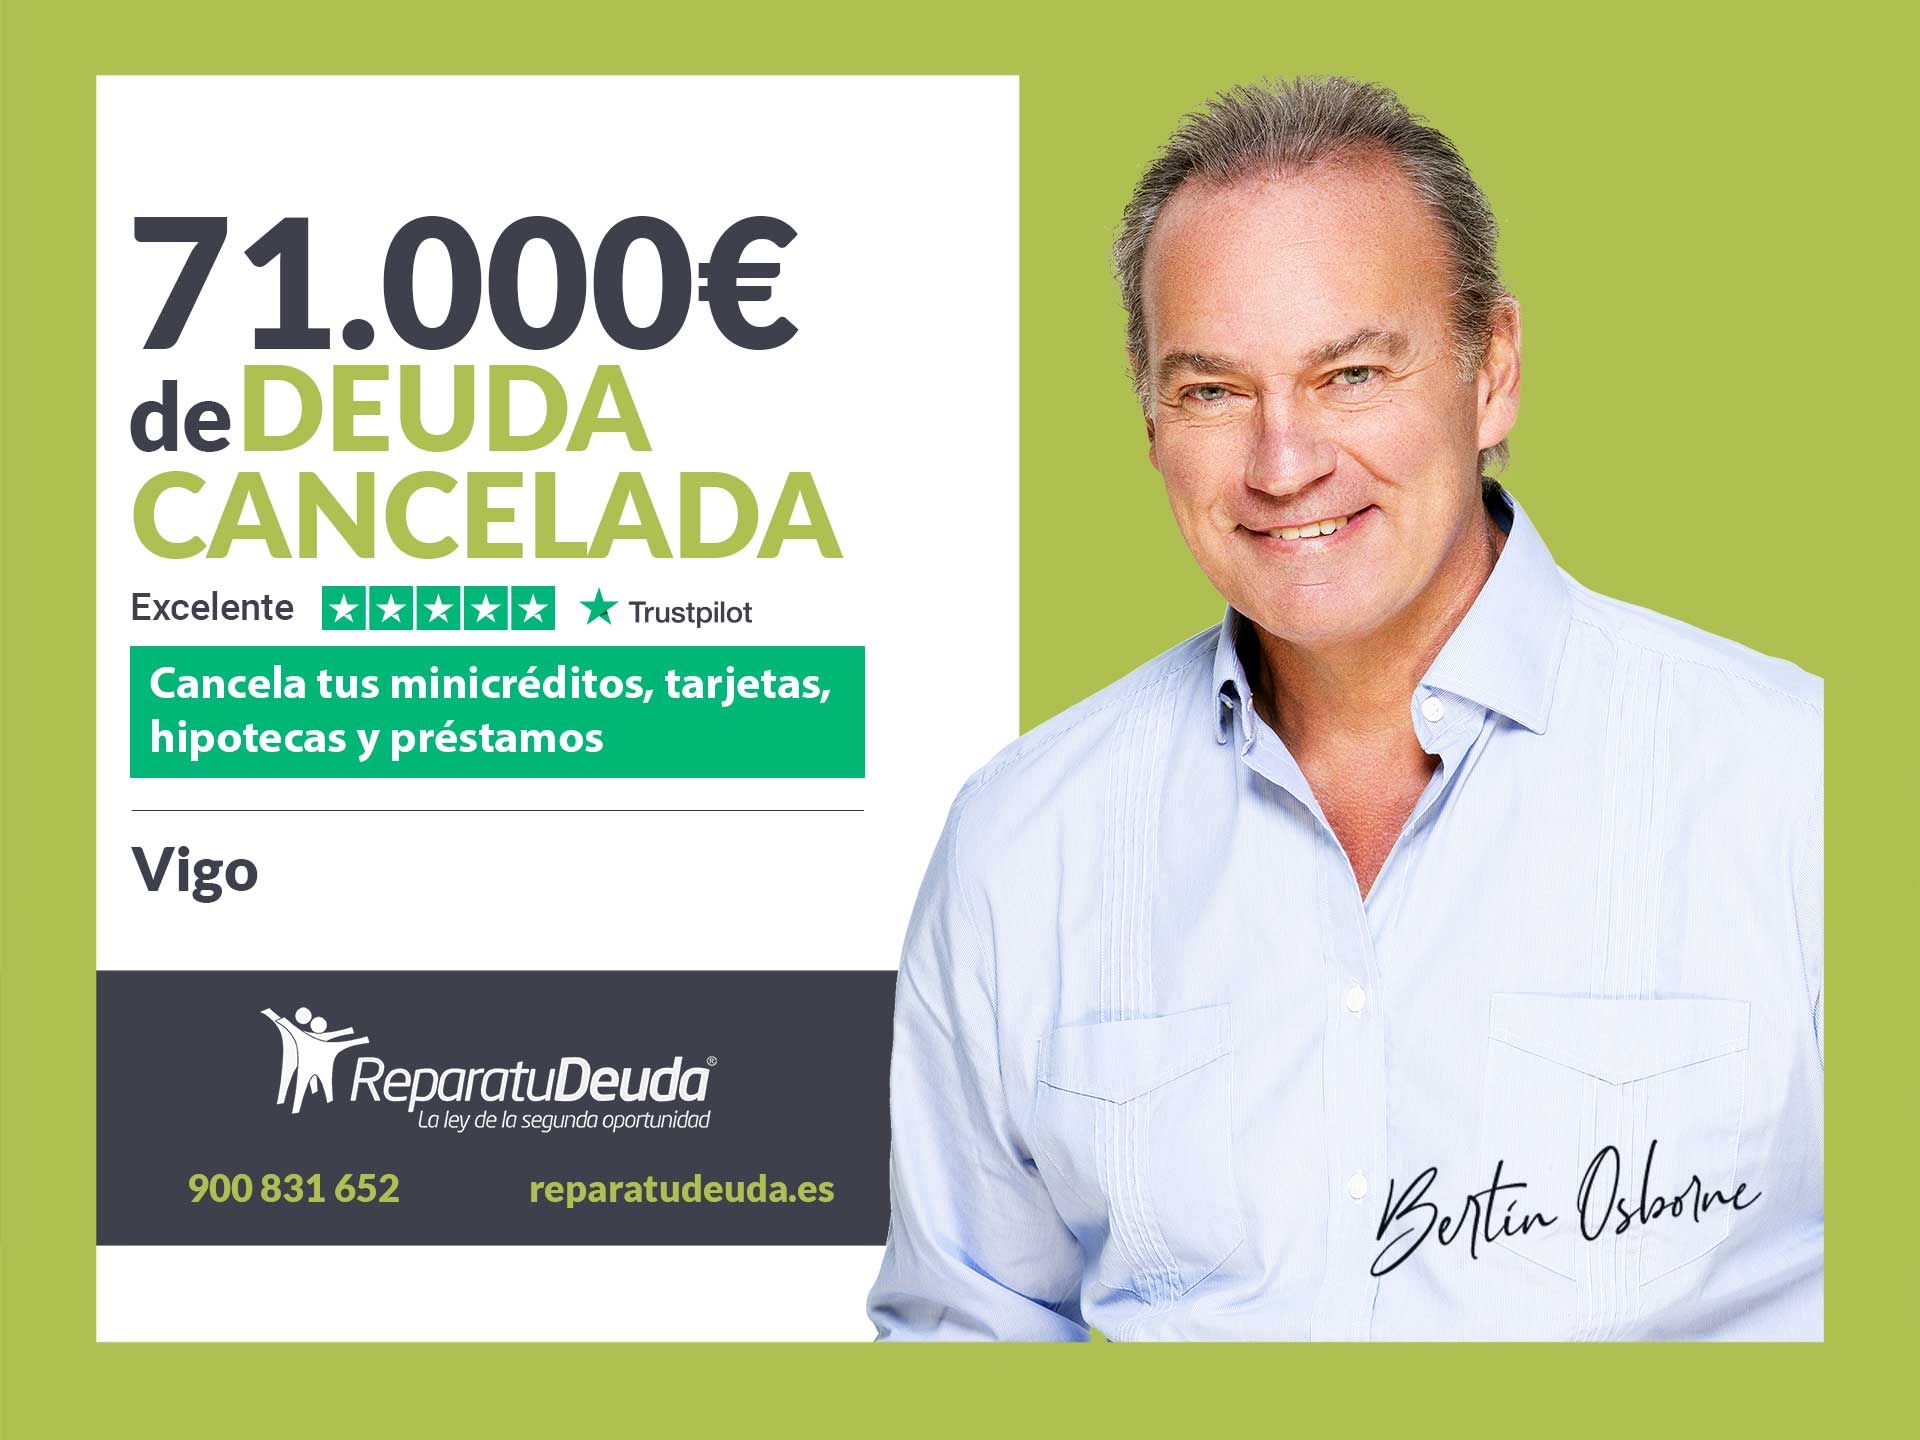 Repara tu Deuda Abogados cancela 71.000? en Vigo (Pontevedra) con la Ley de Segunda Oportunidad